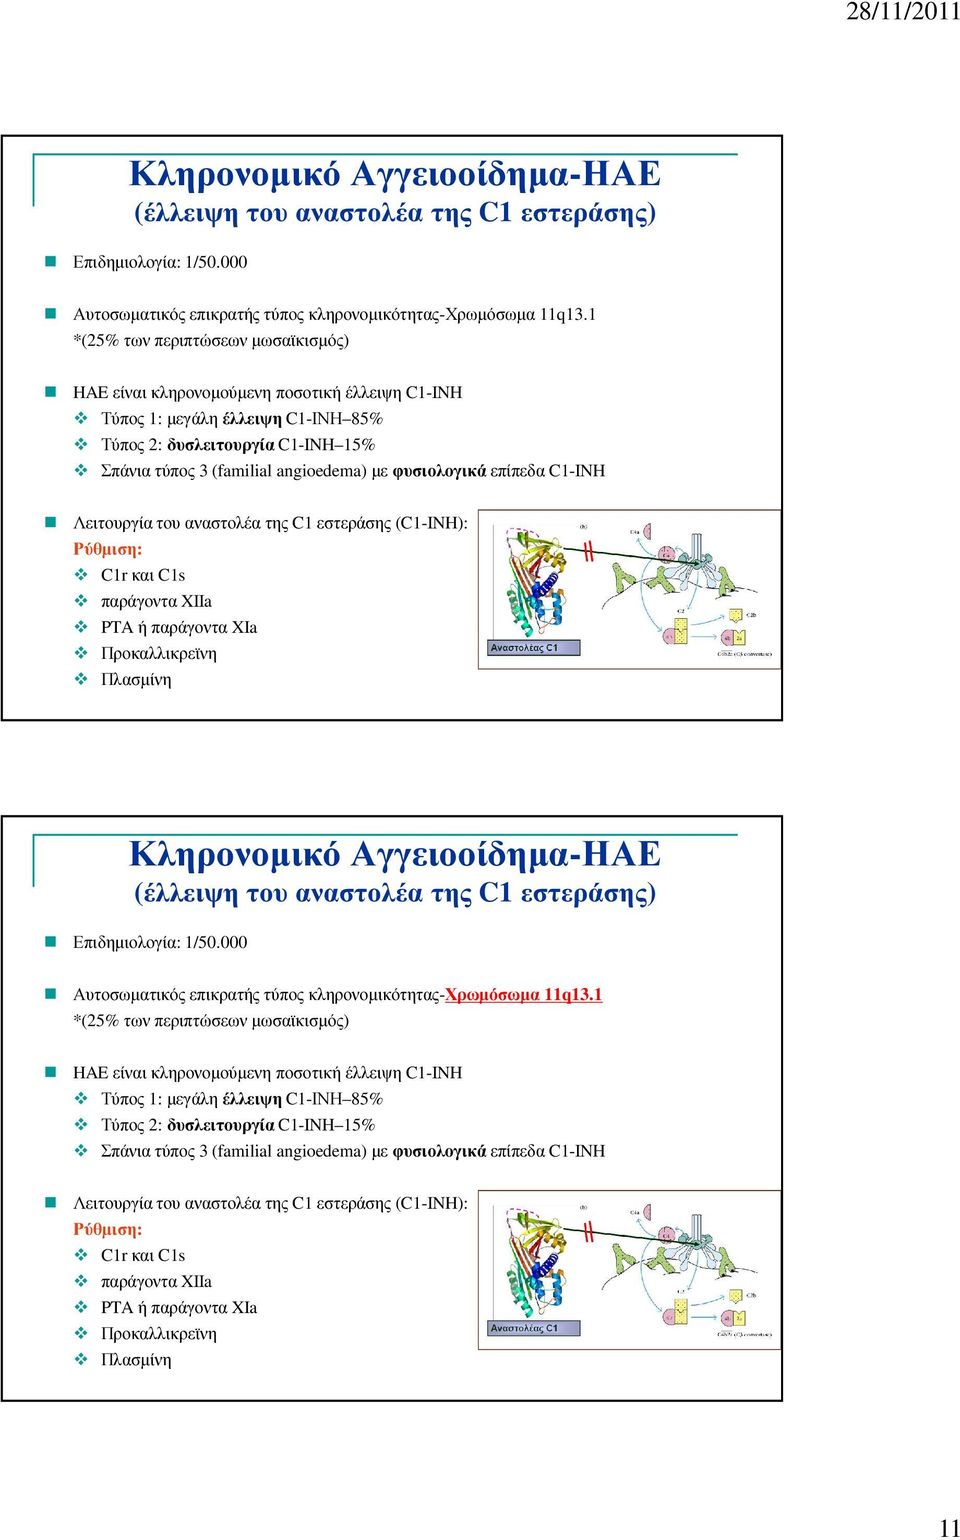 φυσιολογικά επίπεδα C1-INH Λειτουργία του αναστολέα της C1 εστεράσης (C1-INH): Ρύθµιση: C1r και C1s παράγοντα XIIa PTA ή παράγοντα XIa Προκαλλικρεϊνη Πλασµίνη 21  φυσιολογικά επίπεδα C1-INH